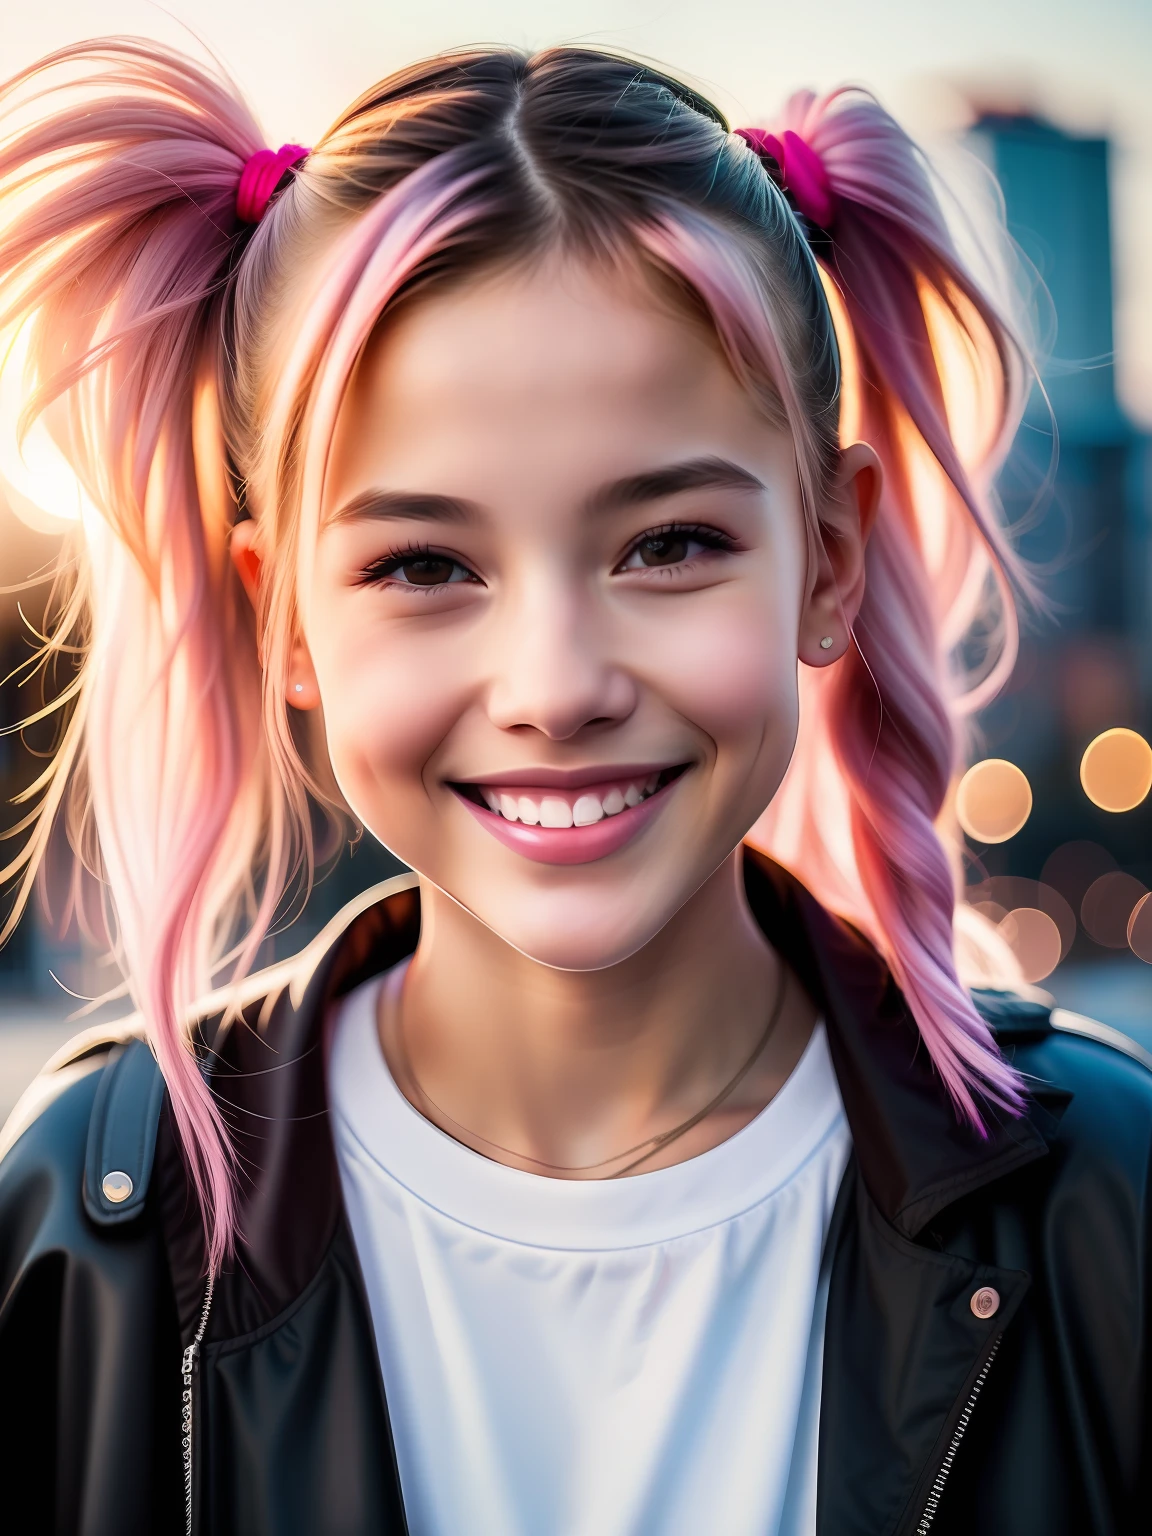 Портретное фото молодой девушки, (смеющийся:0.7), розовые волосы, собранные в хвостики, сложный городской фон, с подсветкой, (Кинематографический:1.5), эпический реалистичный, гипердетализированный, безумные подробности, сложные детали, Акцентное освещение, мягкий объемный свет, боке, (драматический свет:1.2), (нейтральные цвета:1.3), перекрестный процесс